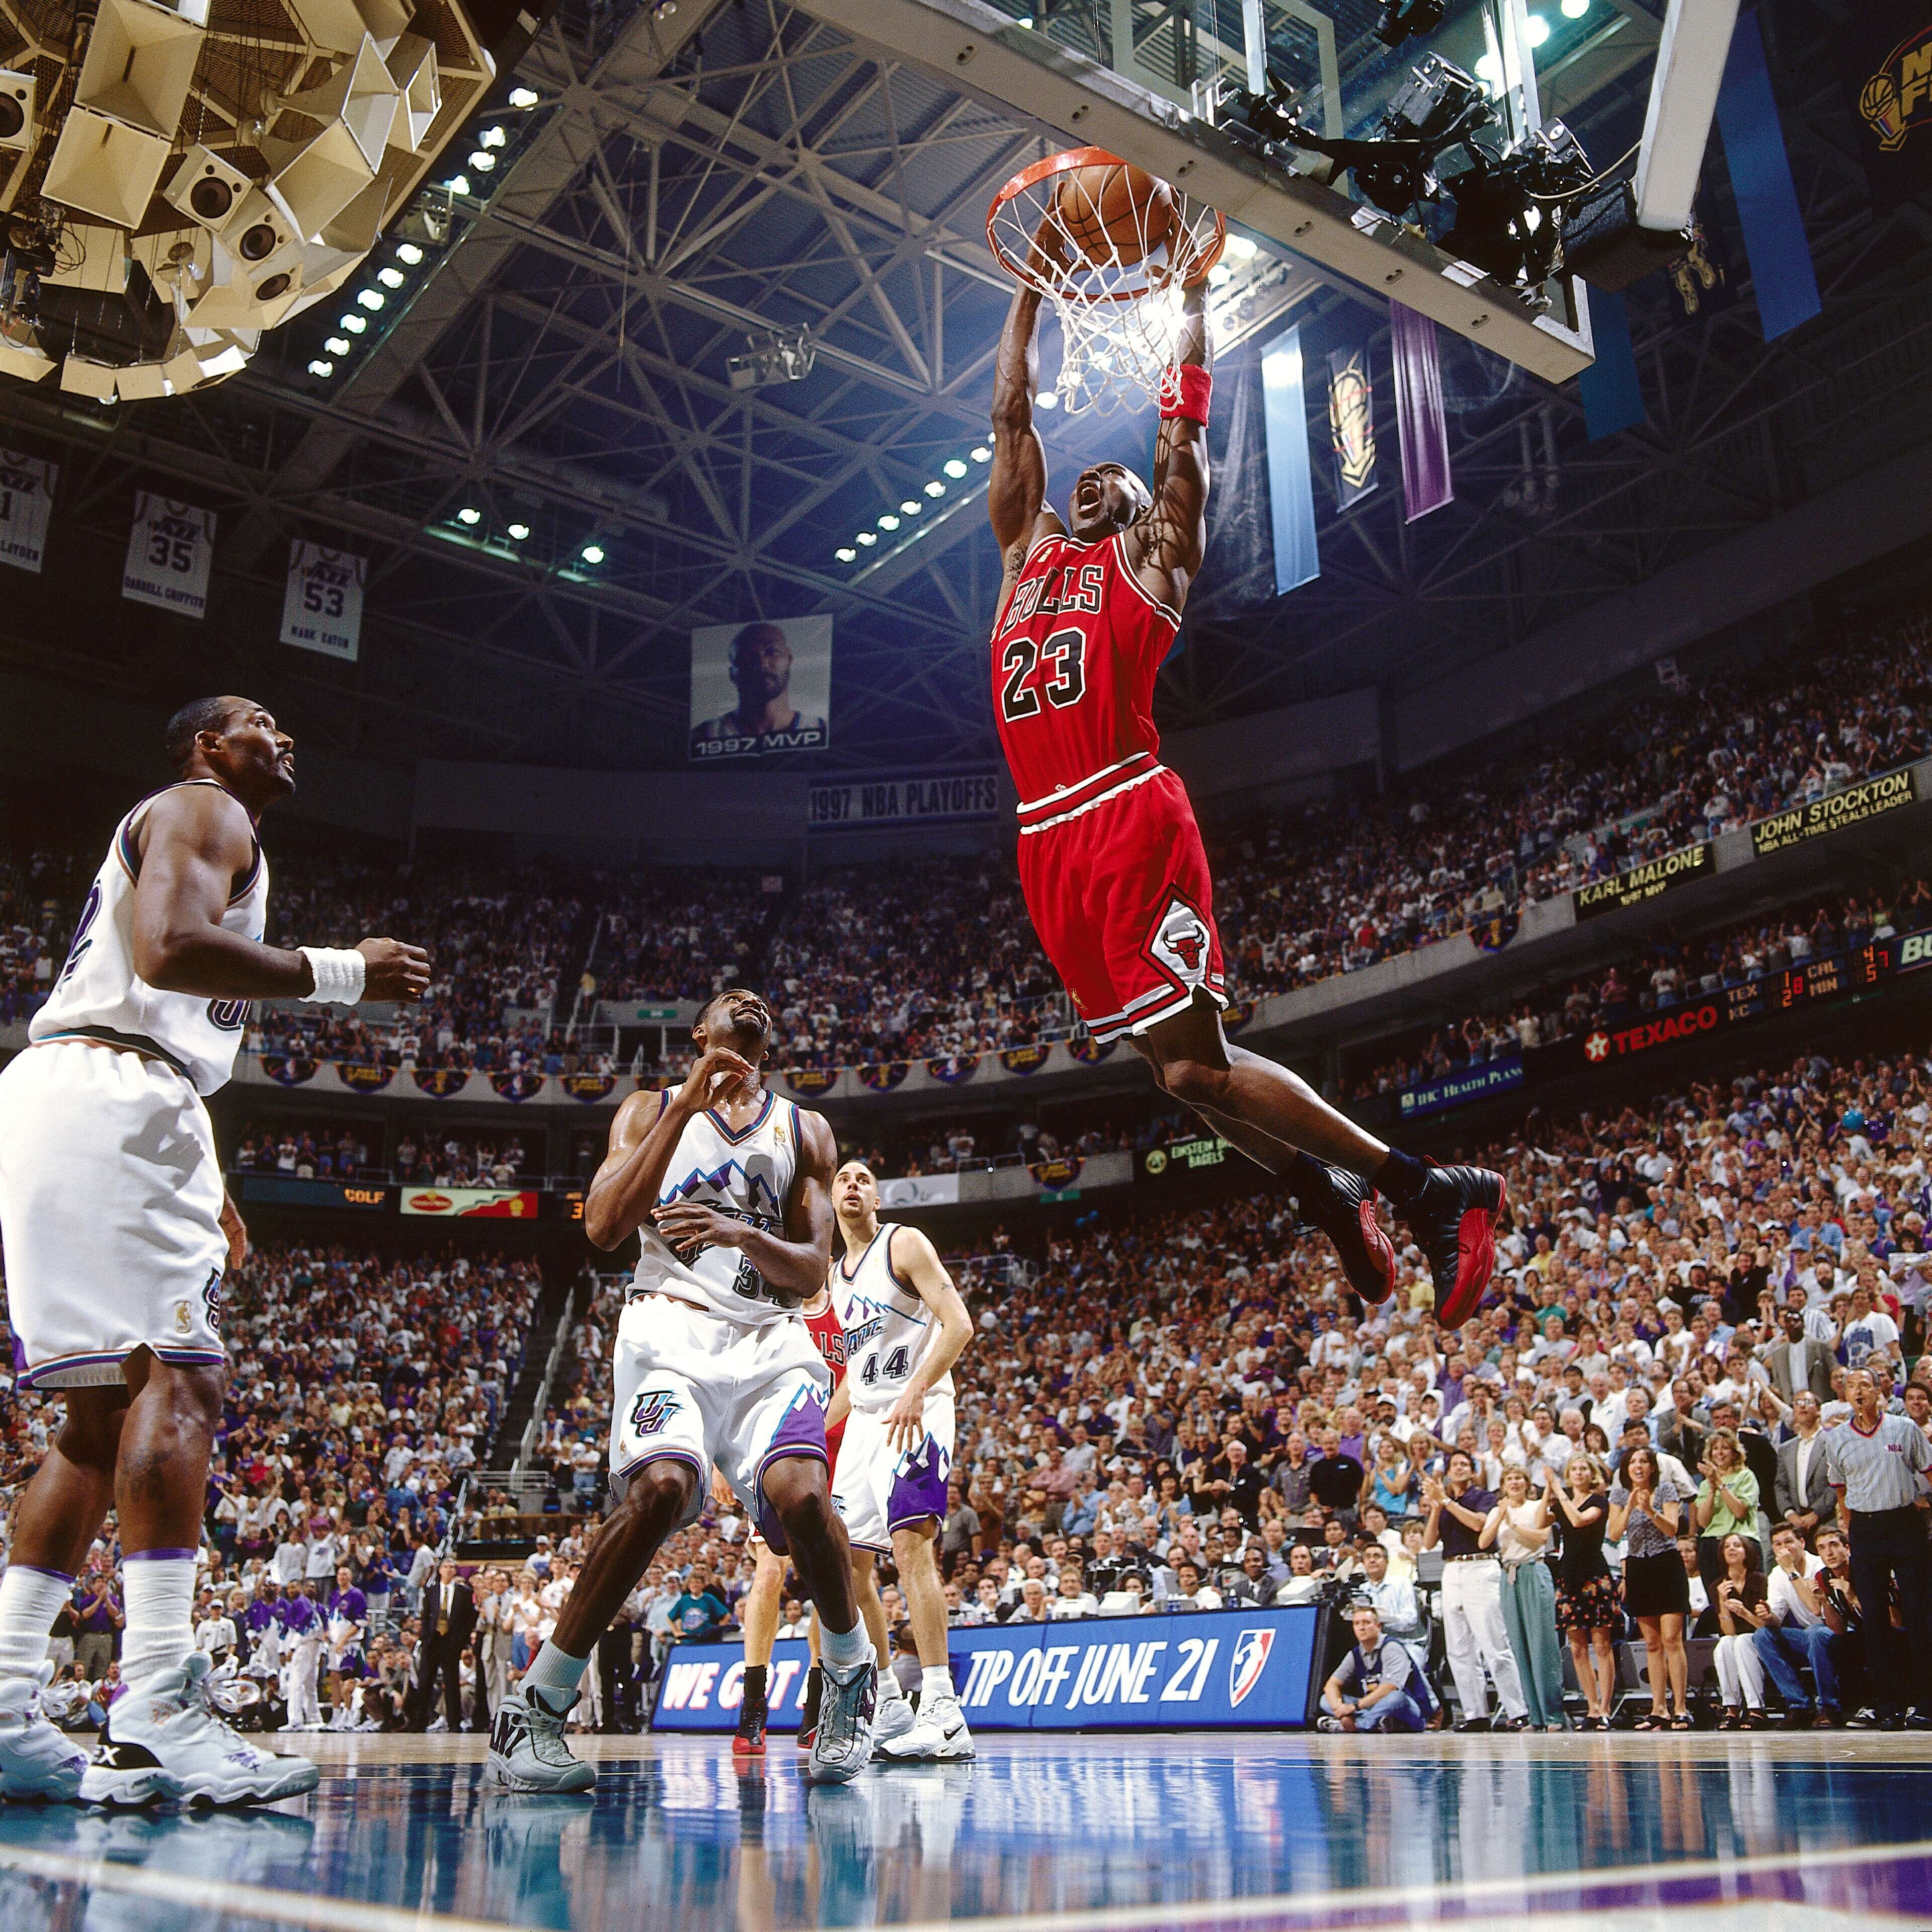 #23 マイケル・ジョーダン シーズンMVP5回、ファイナルMVP6回受賞。10度のシーズン得点王。90年代にシカゴ・ブルズを2度のスリーピート達成に導いた「史上最高のバスケットボール選手」だ。Photo by Getty Imagesバスケットボール記事一覧